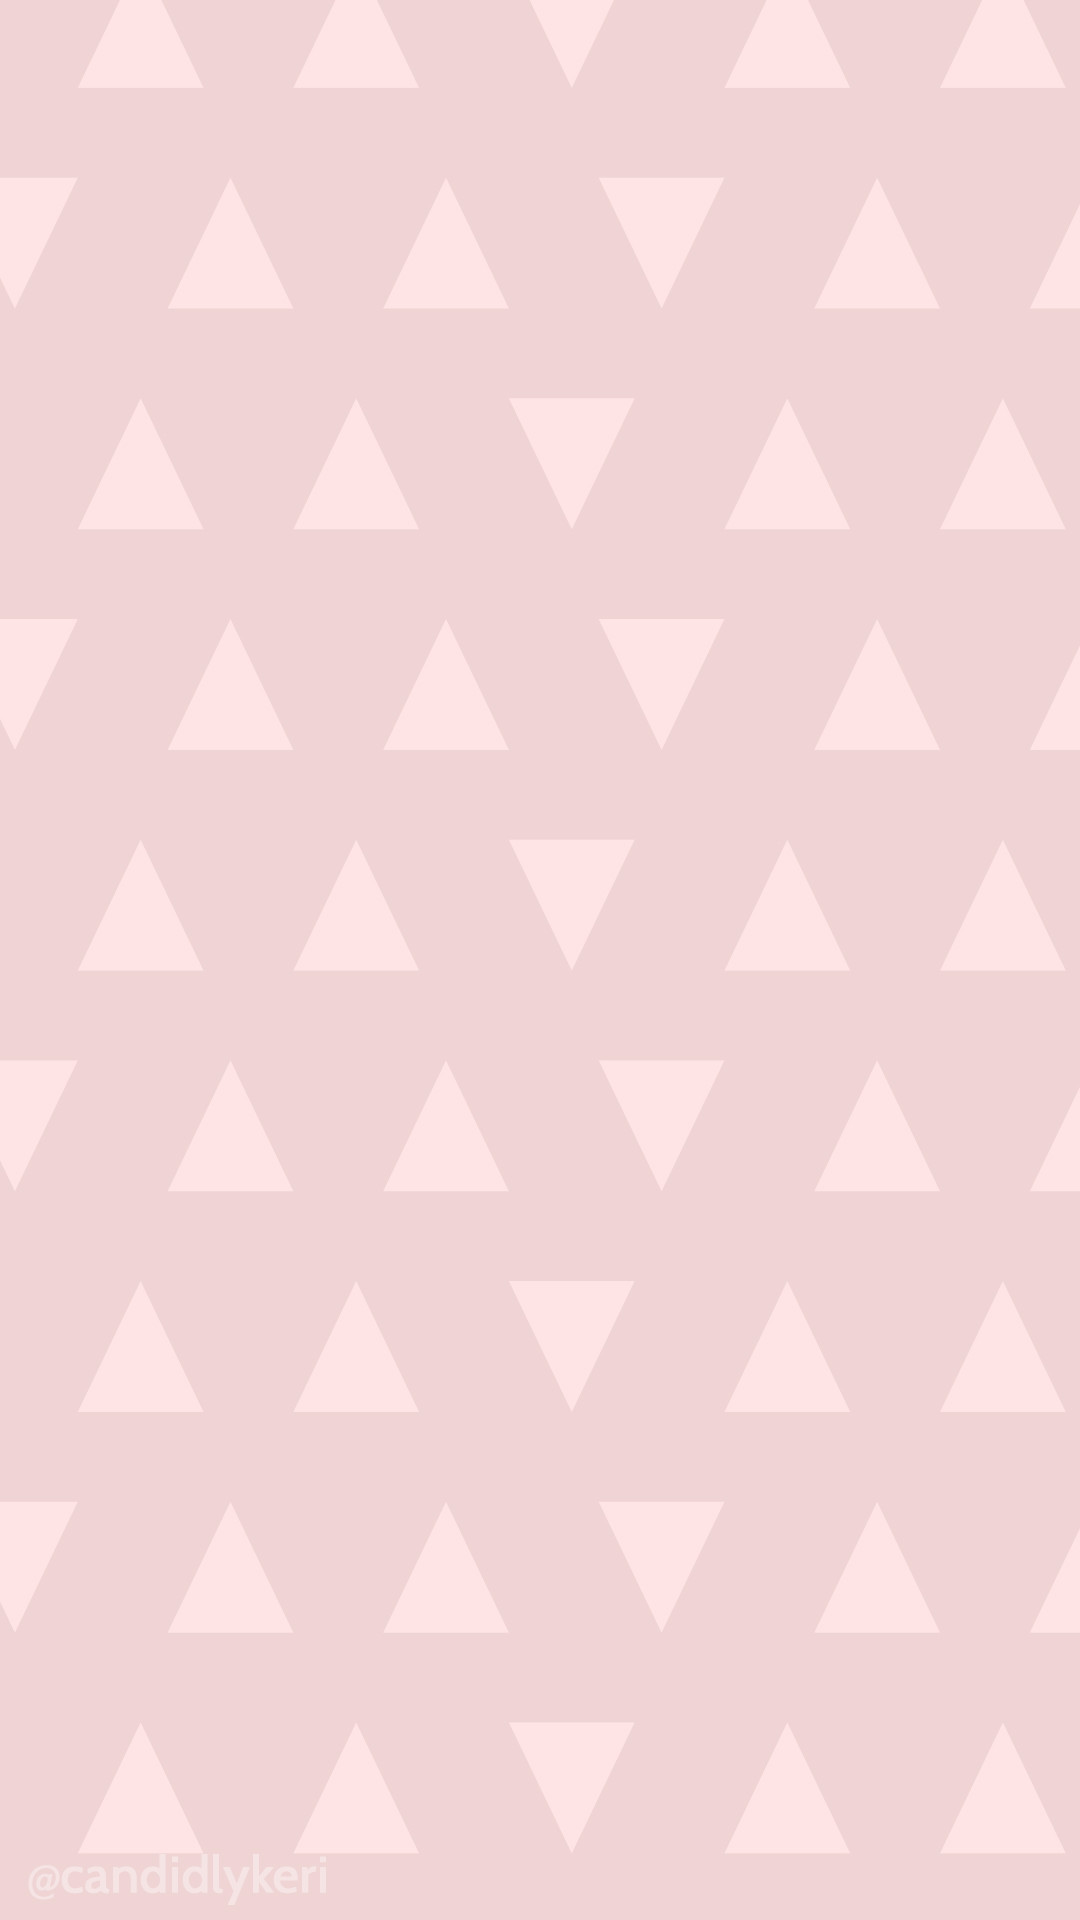 1920x1080 wallpaper polka pink hexagon dots orange dark orange 522505 e30b63 diagonal 30a‚a 159px download